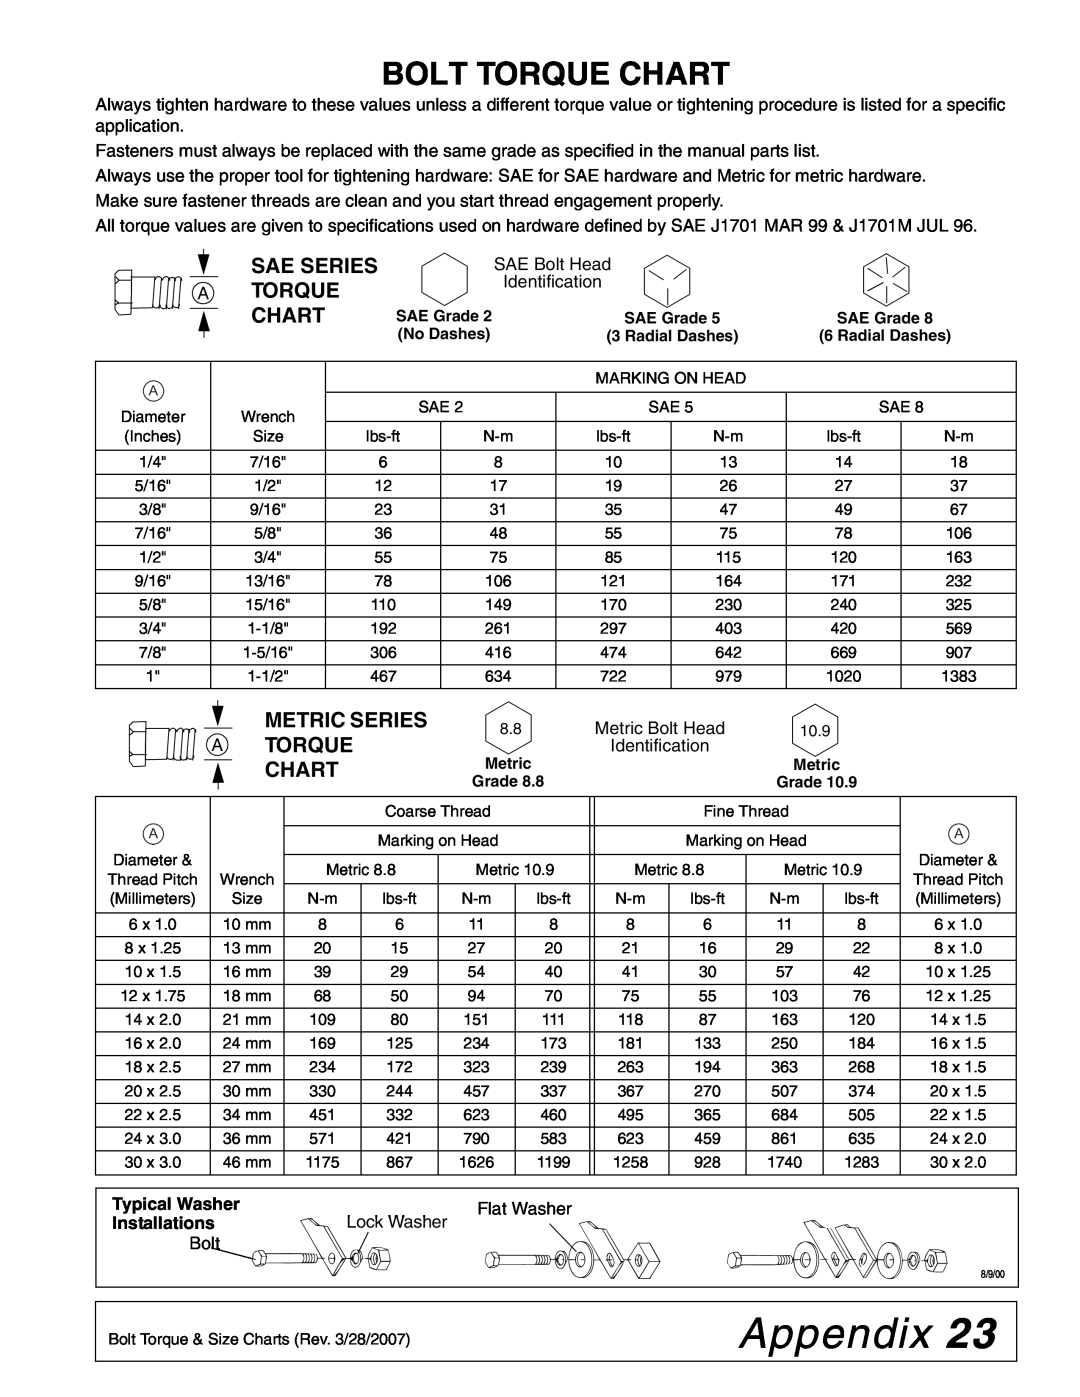 Woods Equipment 59LB-1 manual Appendix, Bolt Torque Chart, Sae Series A Torque Chart, Metric Series A Torque Chart 